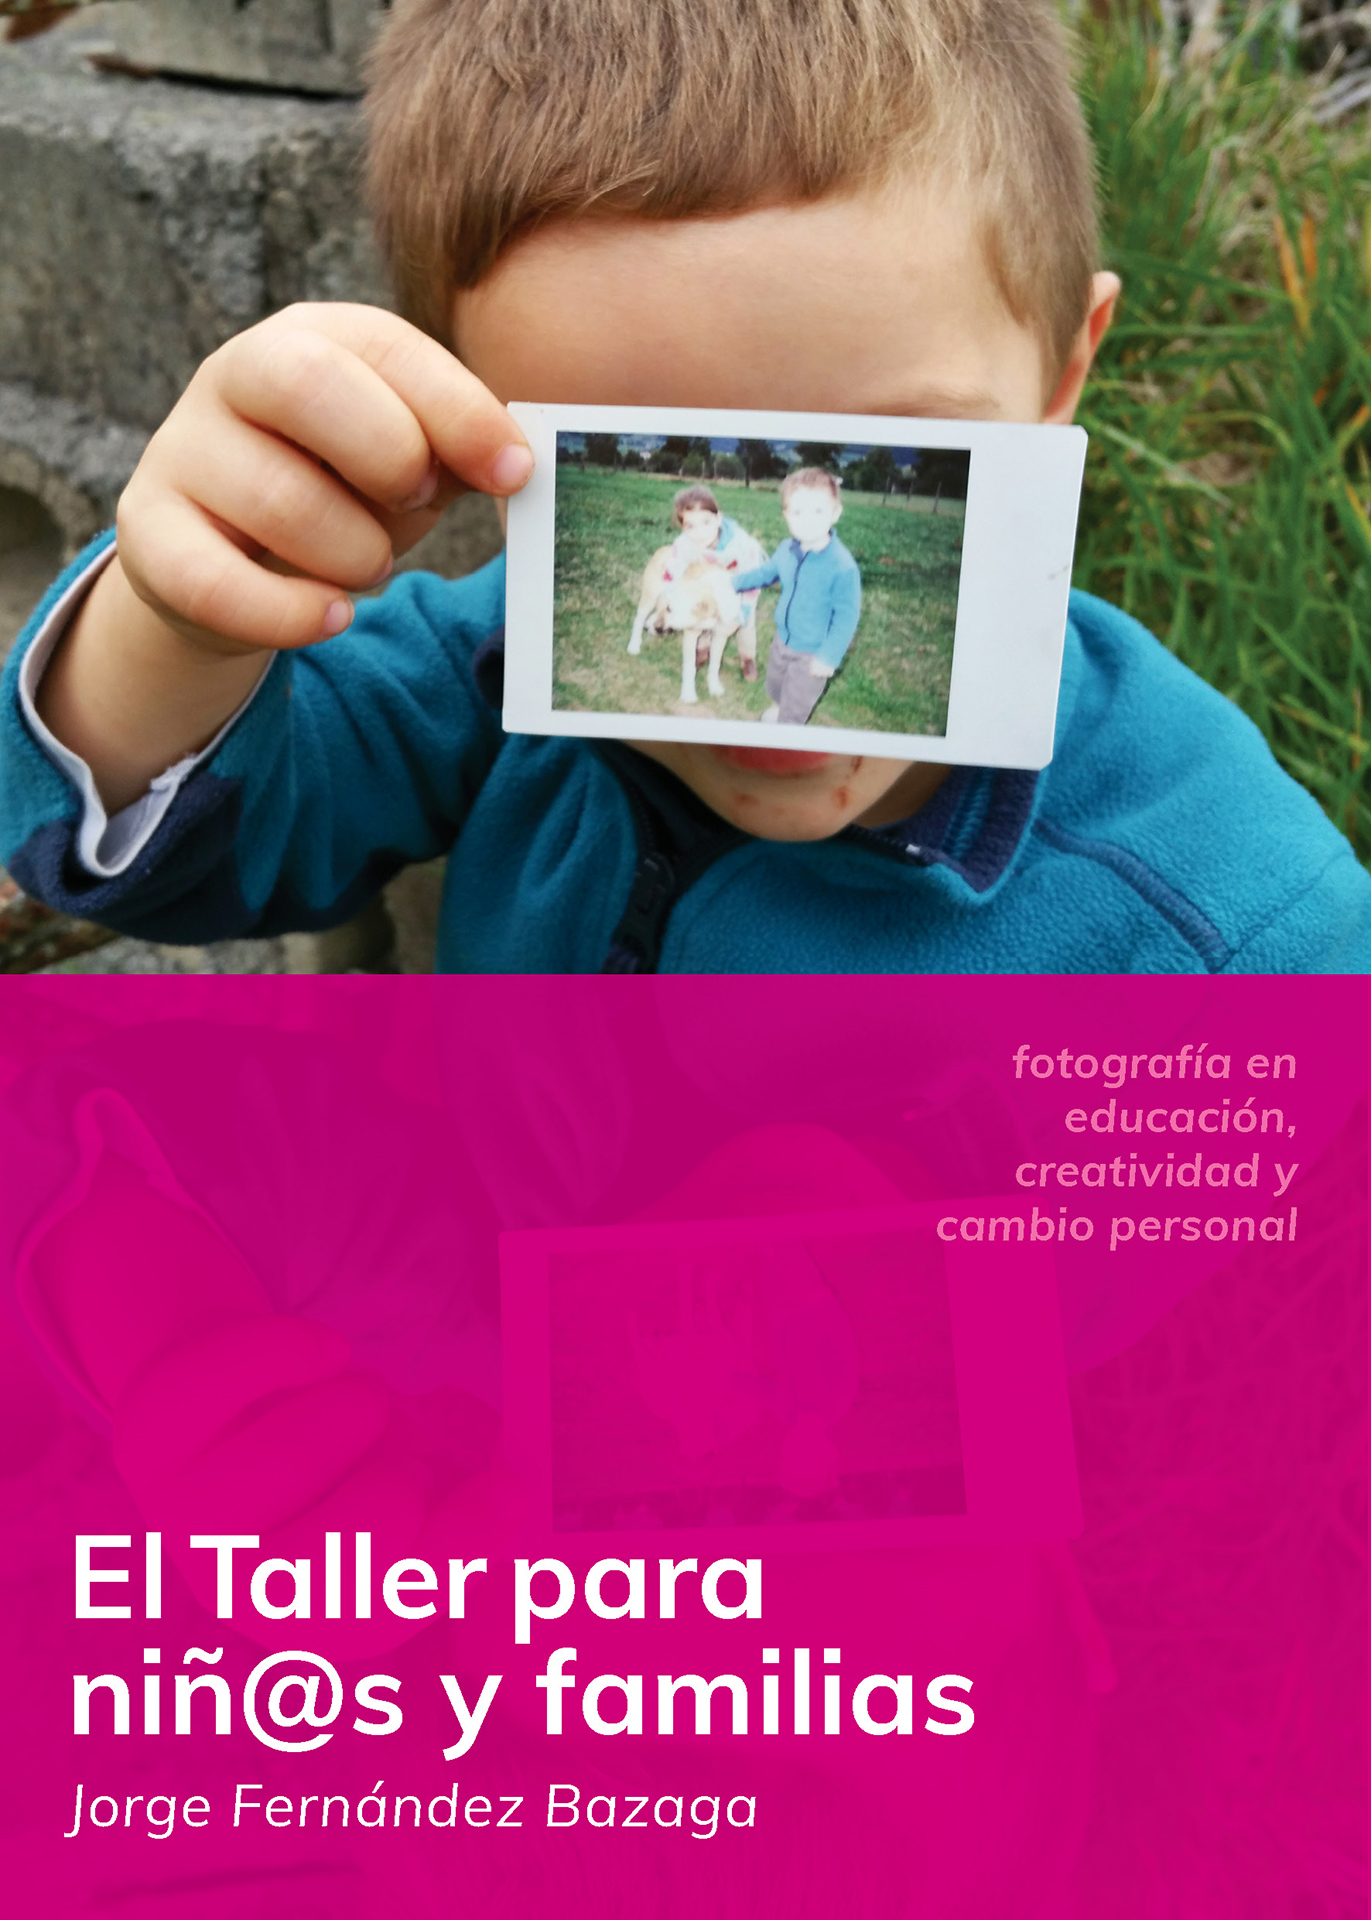 El Taller para niños y familias